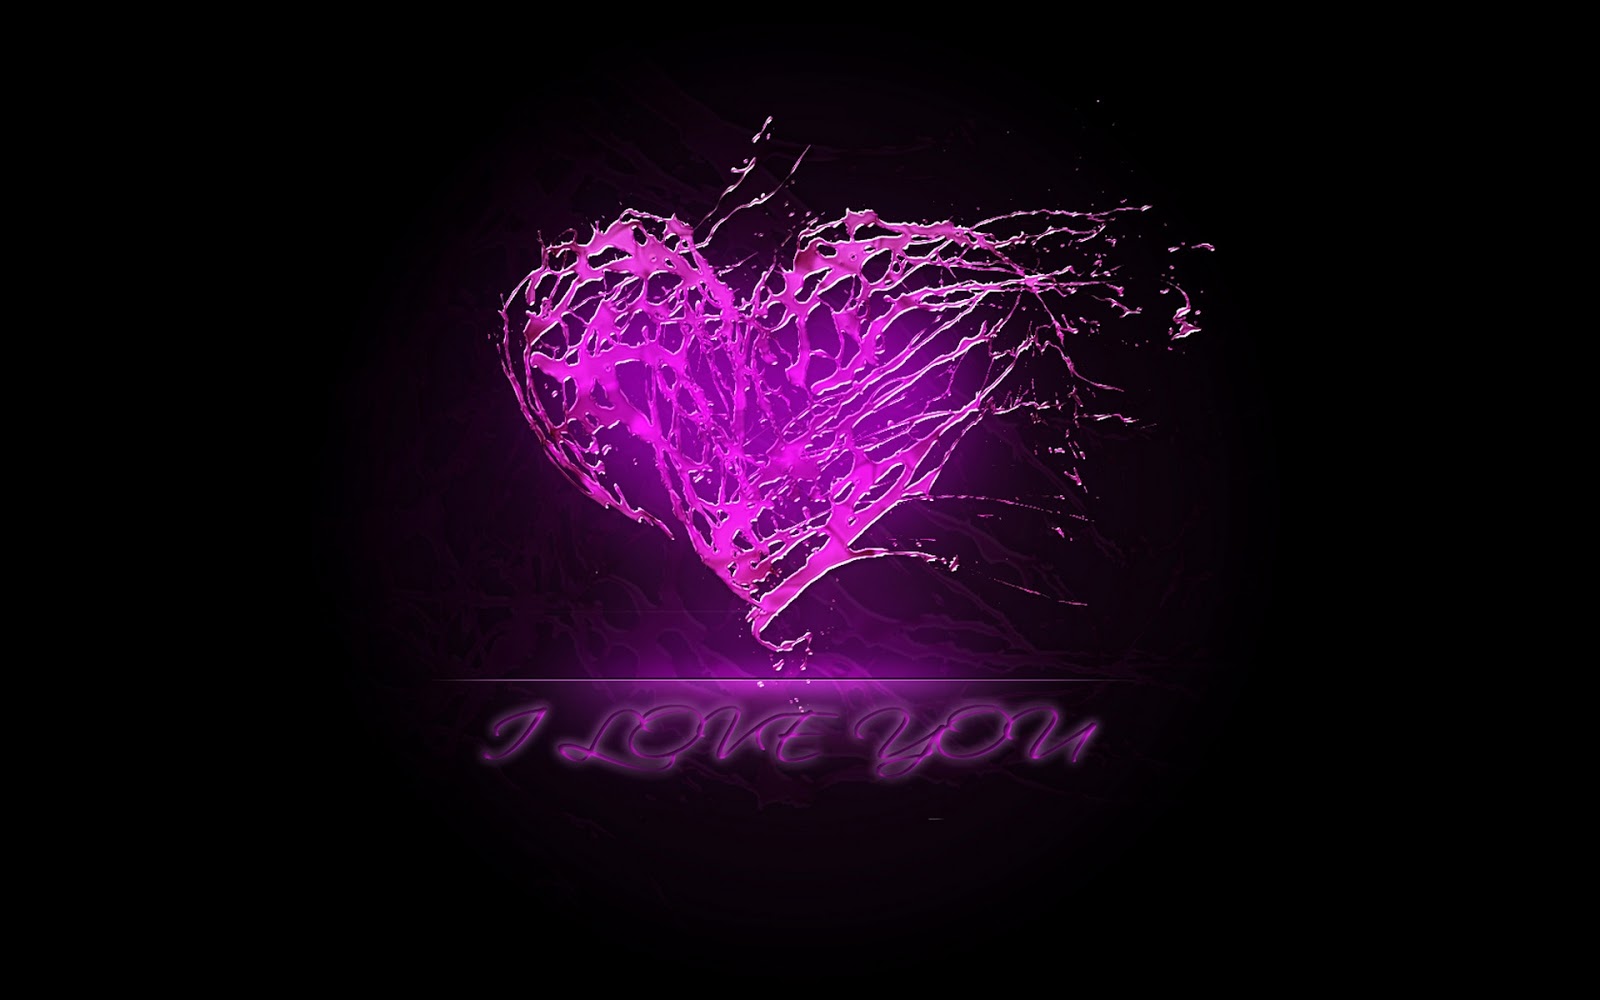 Purple Heart Wallpaper Hearts